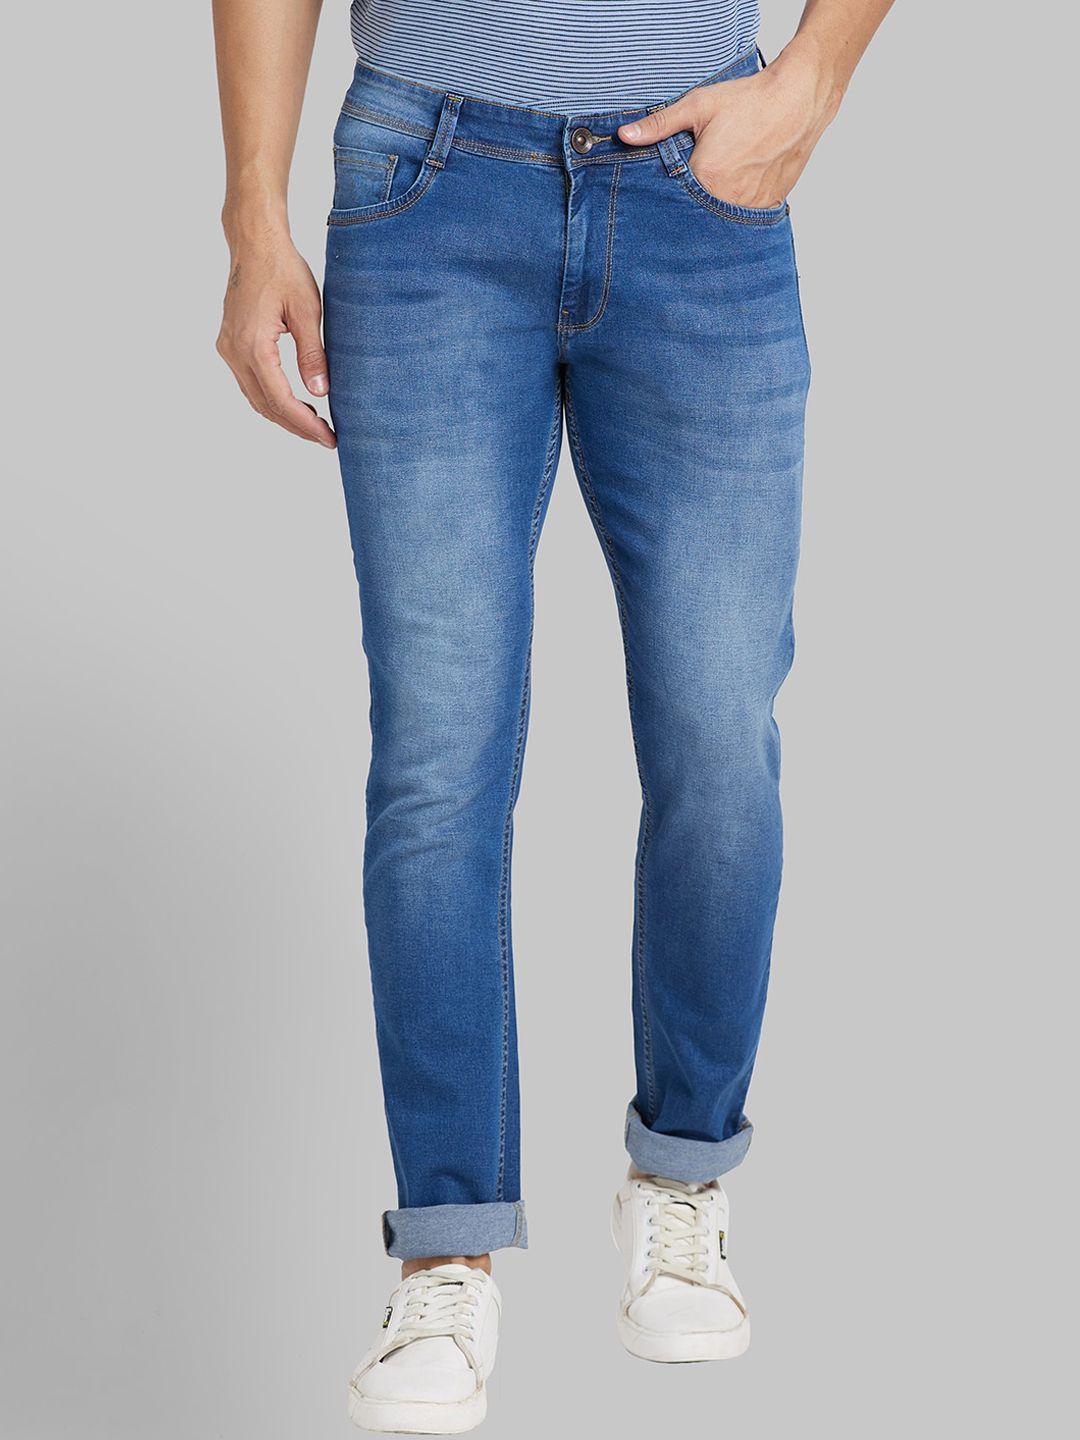 park-avenue-men-heavy-fade-mid-rise-jeans